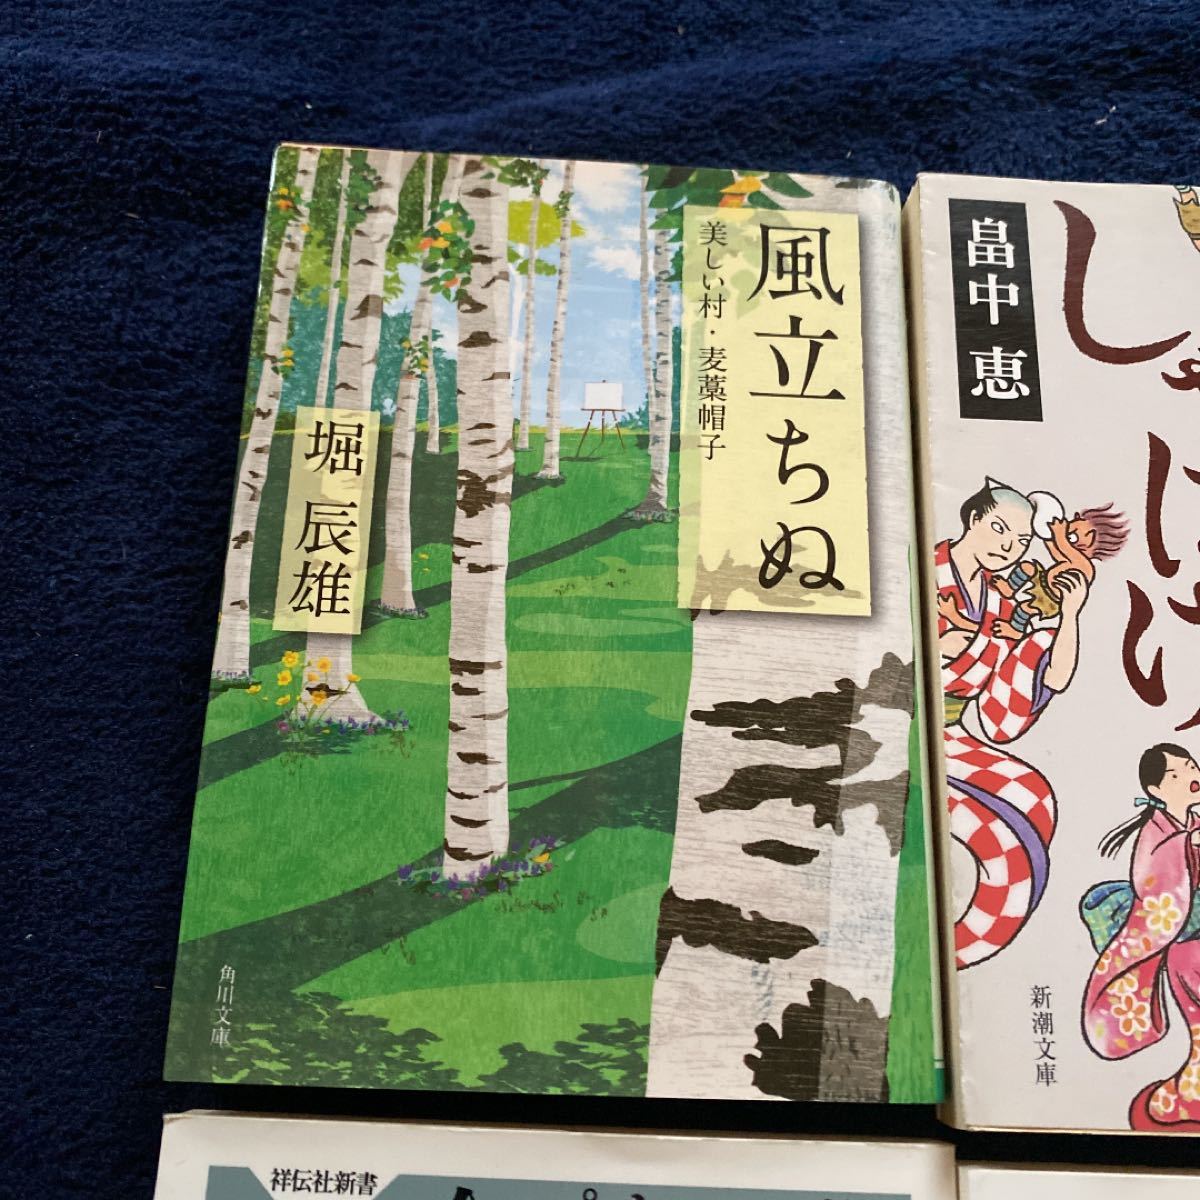 櫻子さんの足下には死体が埋まっている ほか6冊 文庫本